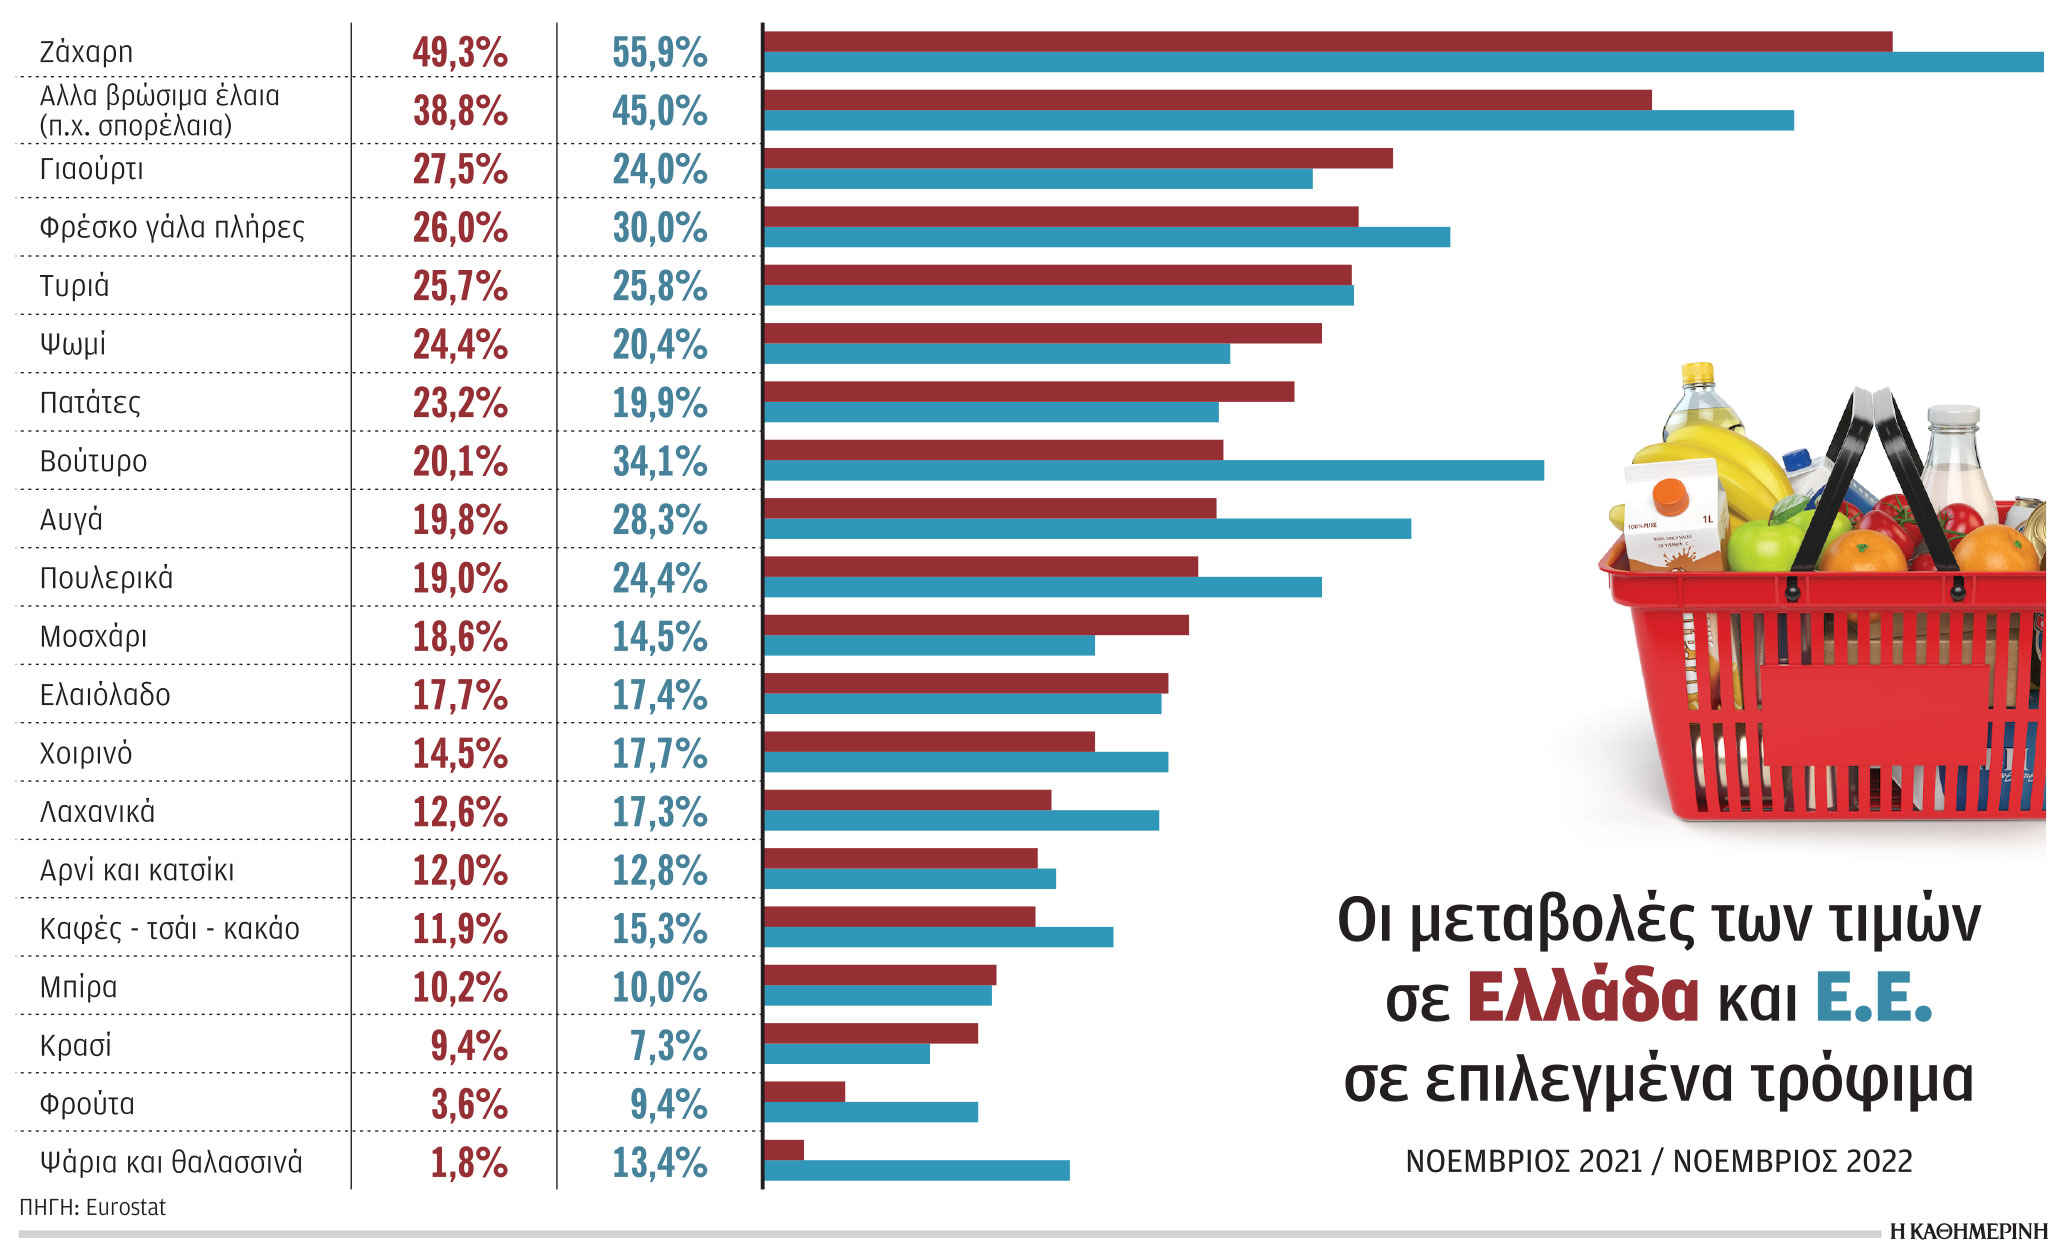 Υψηλότερος ο πληθωρισμός τροφίμων στην Ελλάδα-1